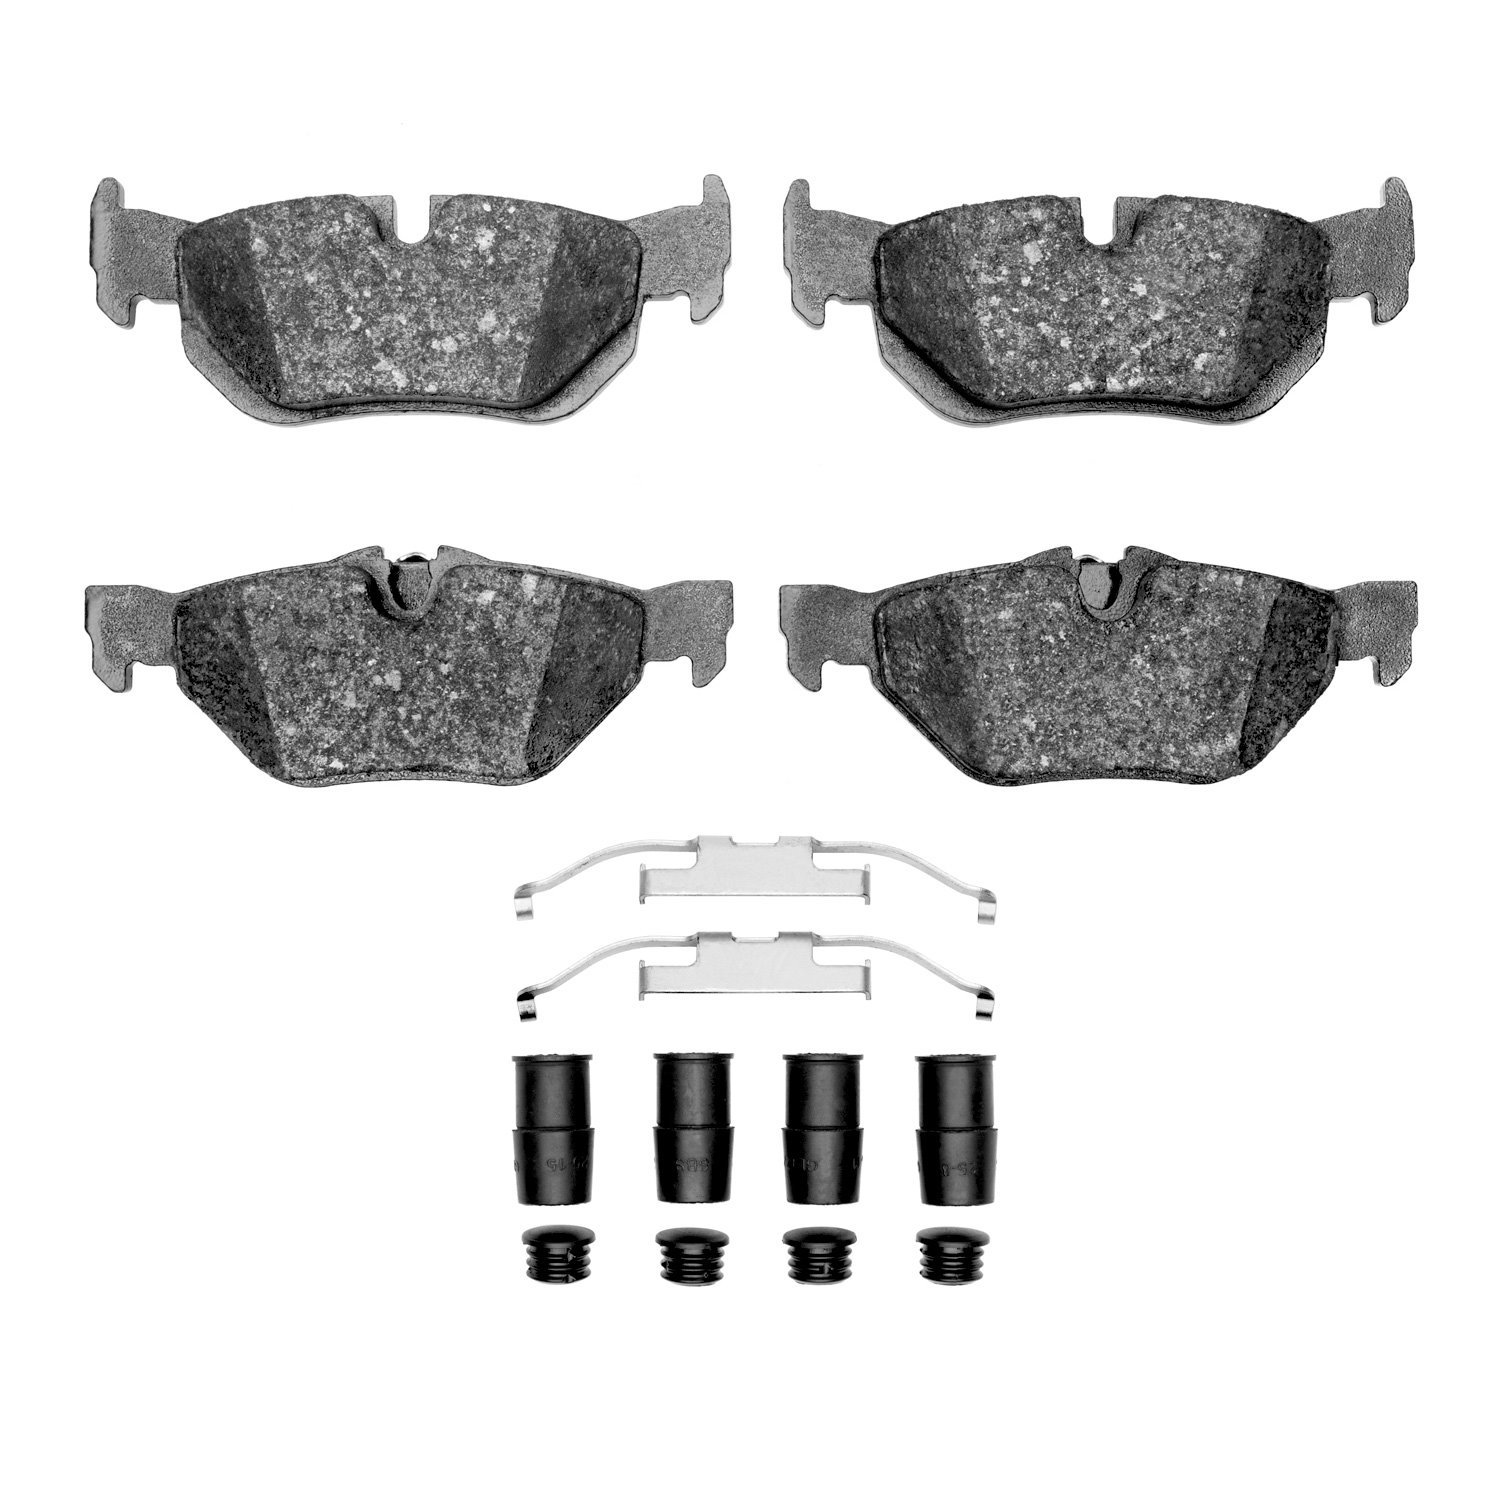 1600-1267-01 5000 Euro Ceramic Brake Pads & Hardware Kit, 2006-2015 BMW, Position: Rear